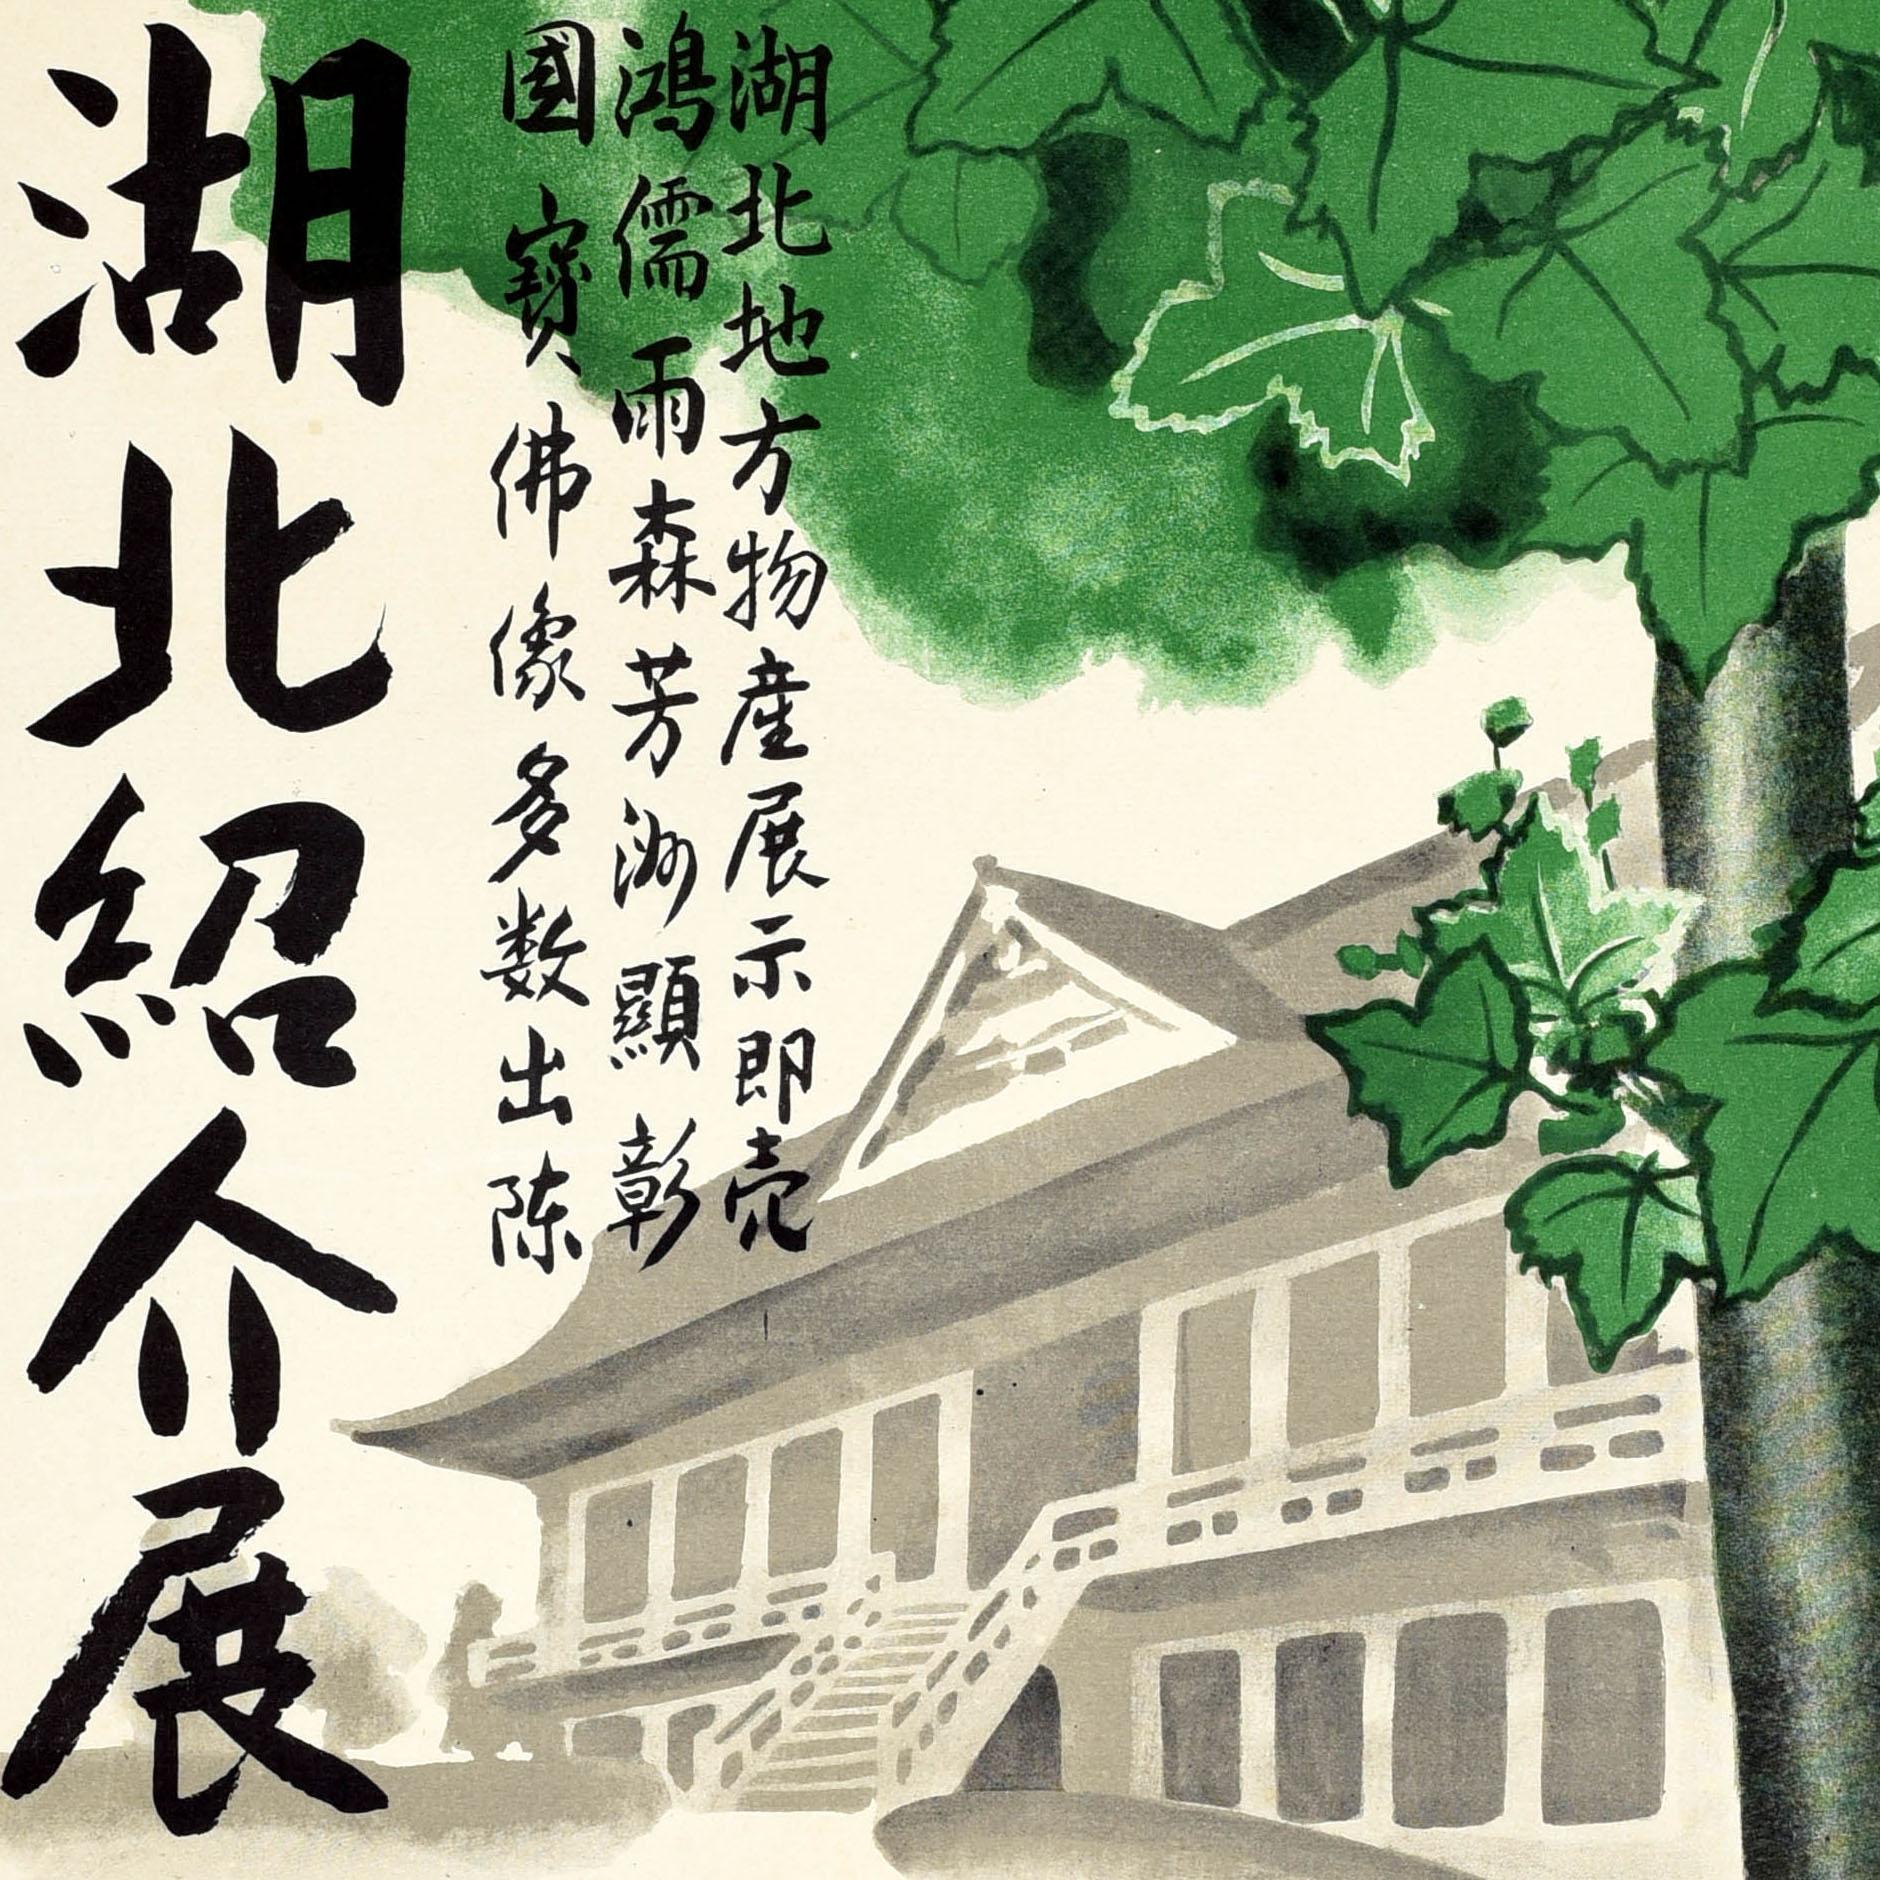 Affiche originale vintage annonçant la huitième exposition d'objets d'art locaux dans la ville d'Otsu (préfecture de Shiga, Japon). Elle représente un arbre vert feuillu devant un bâtiment japonais traditionnel de style ancien en arrière-plan, le